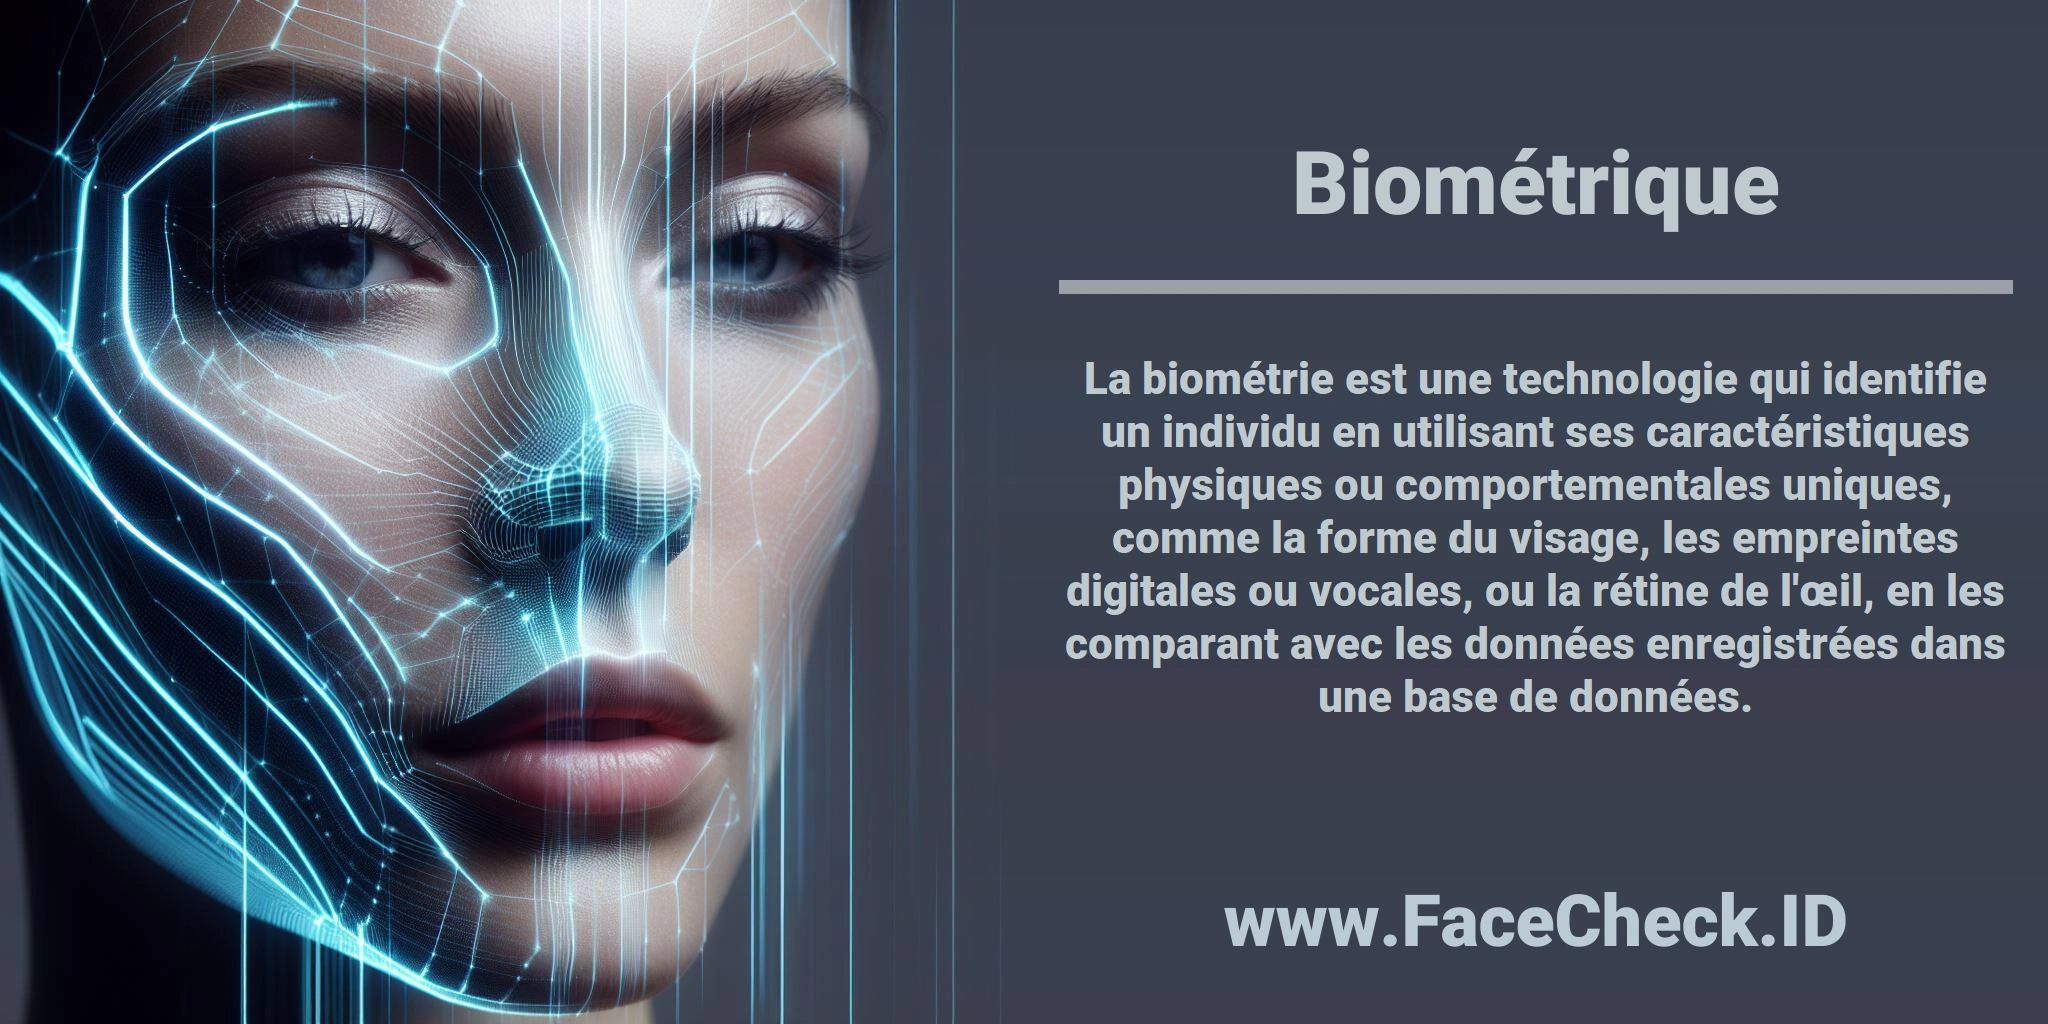 La biométrie est une technologie qui identifie un individu en utilisant ses caractéristiques physiques ou comportementales uniques, comme la forme du visage, les empreintes digitales ou vocales, ou la rétine de l'œil, en les comparant avec les données enregistrées dans une base de données.